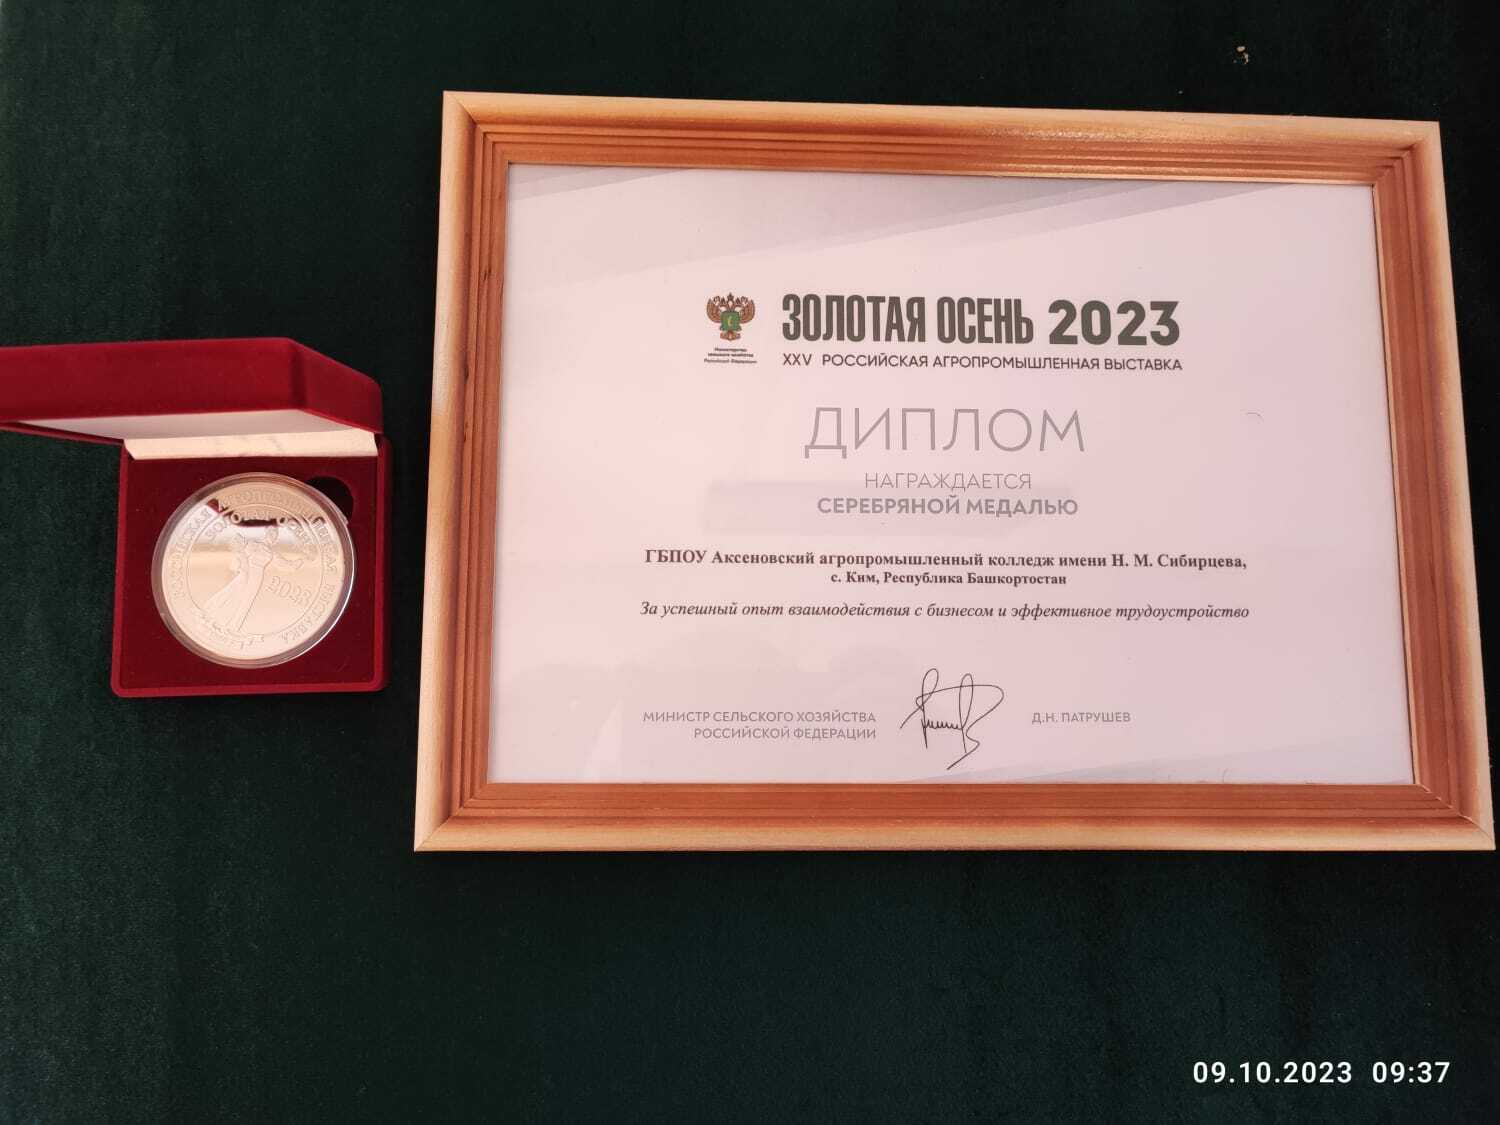 Аксеновский колледж получил четыре медали на агропромышленной выставке «Золотая осень»!